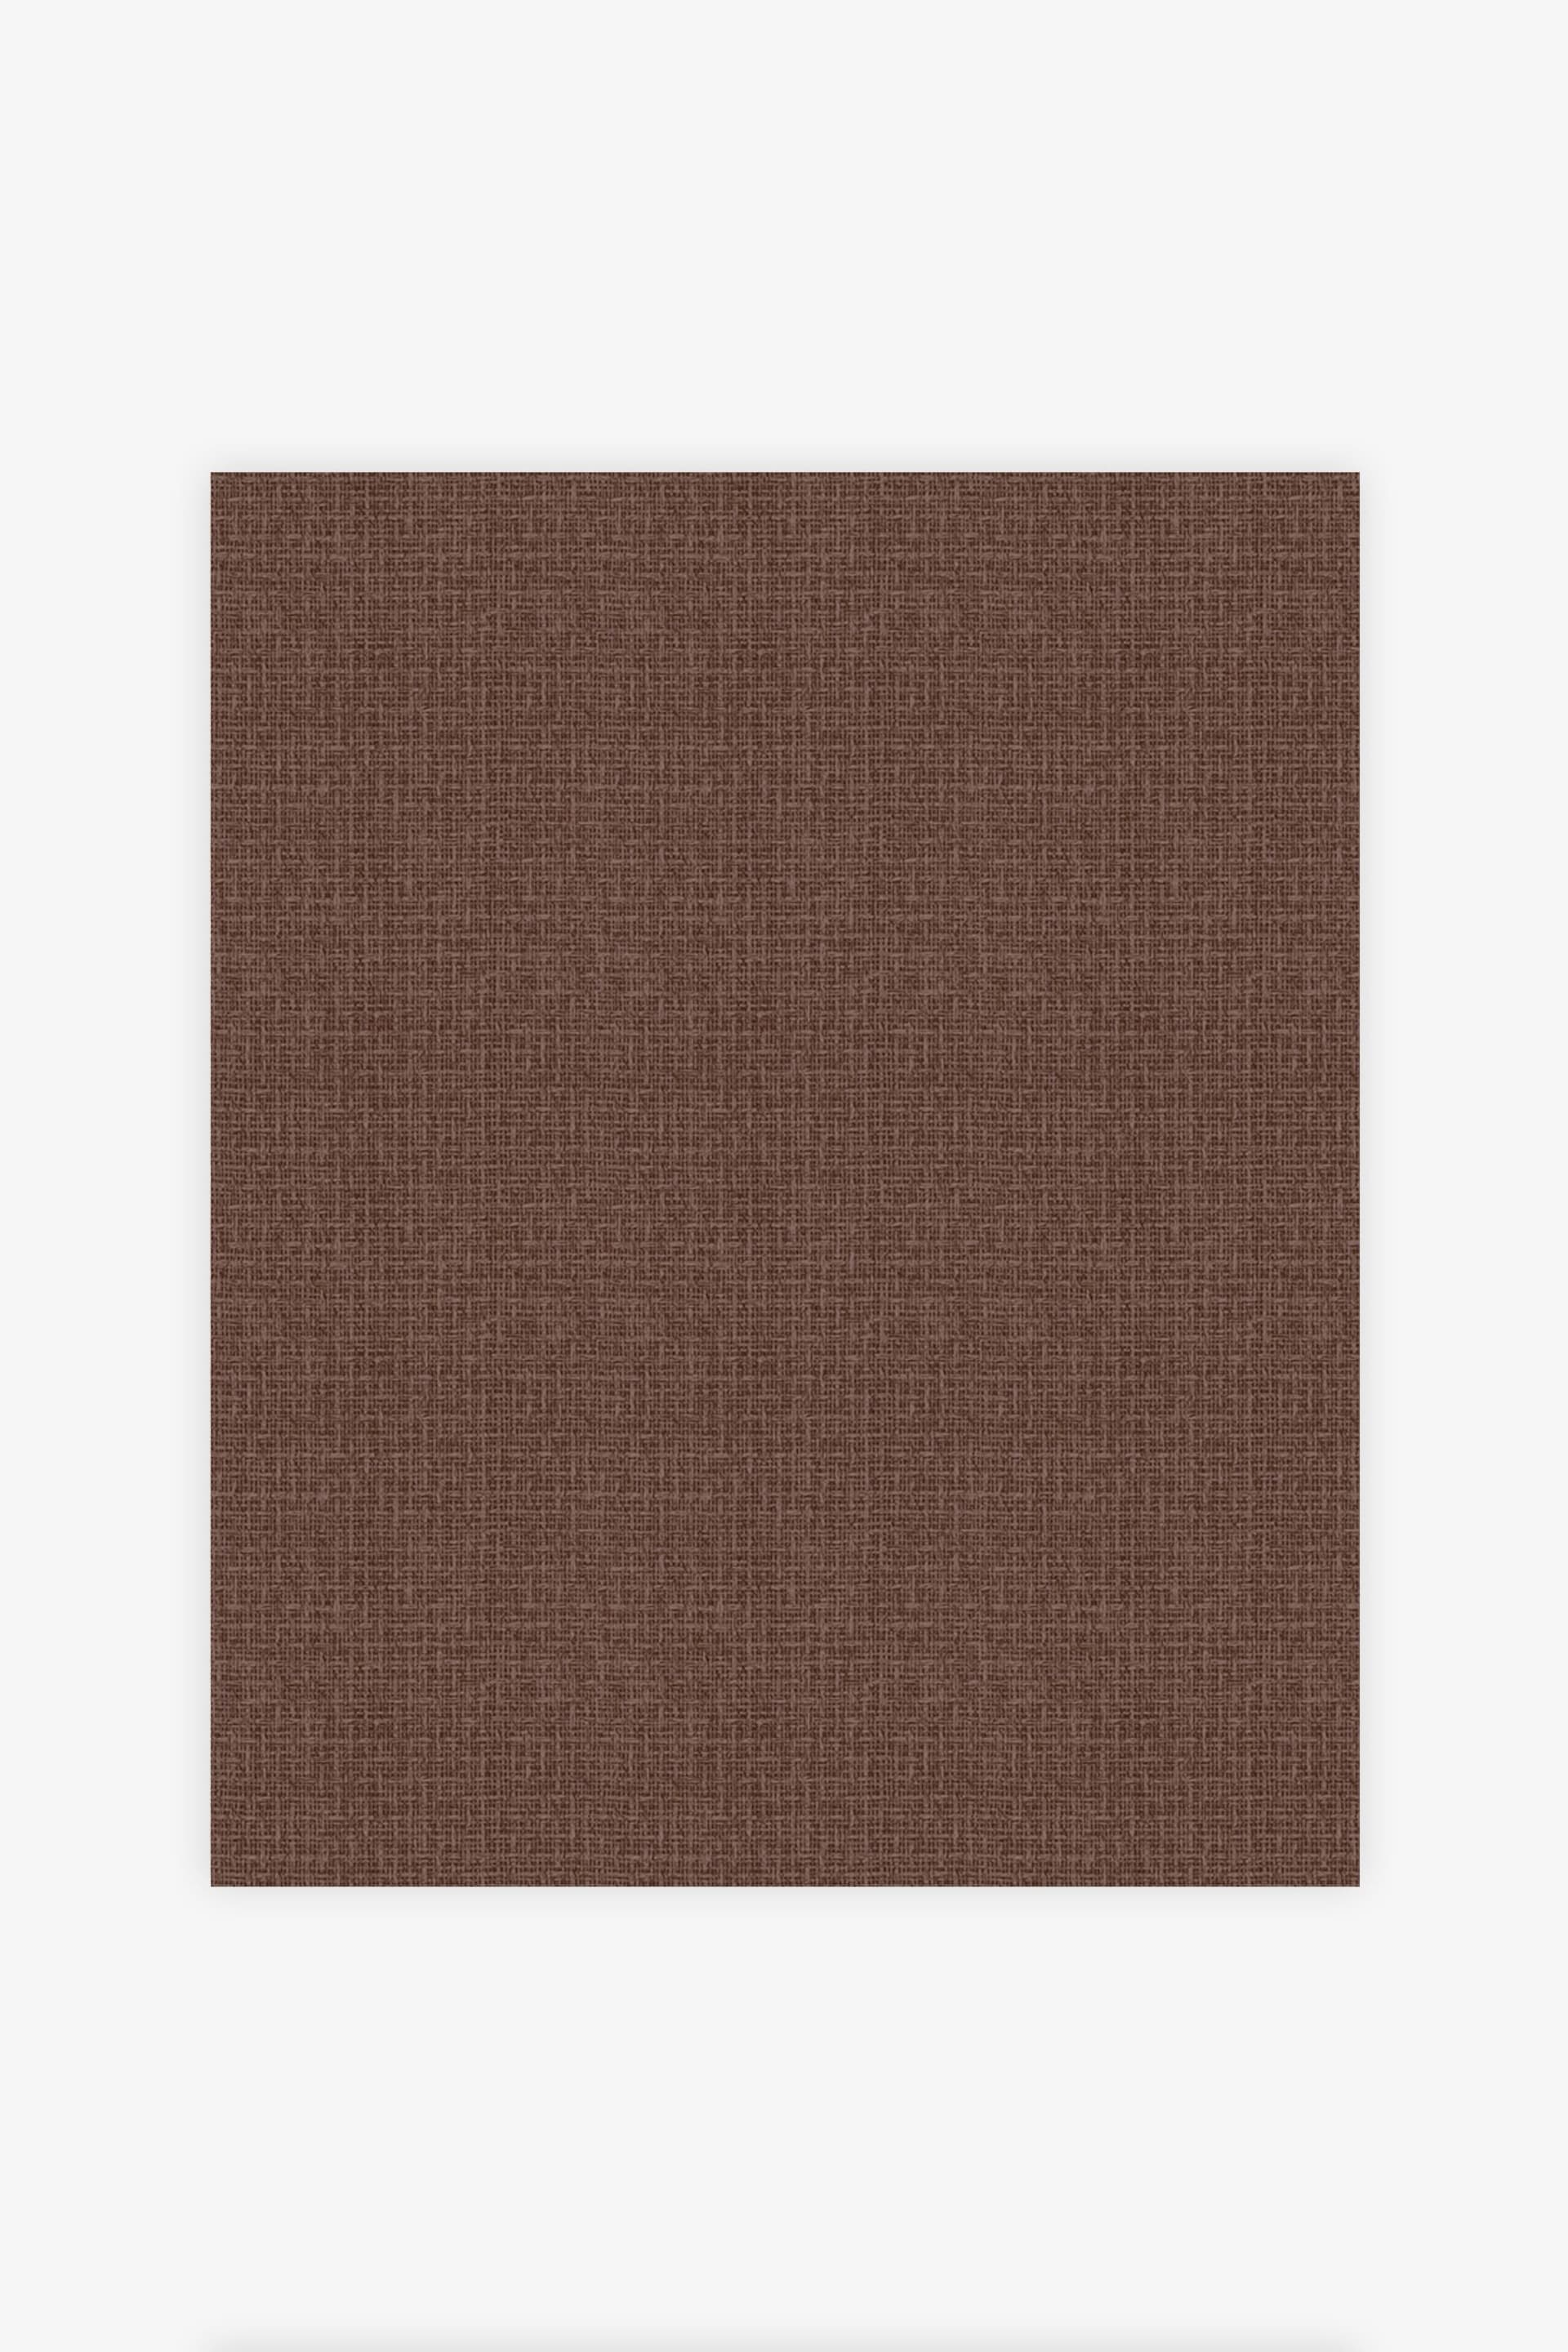 Brown Textured Nomadic Wallpaper - Image 4 of 4